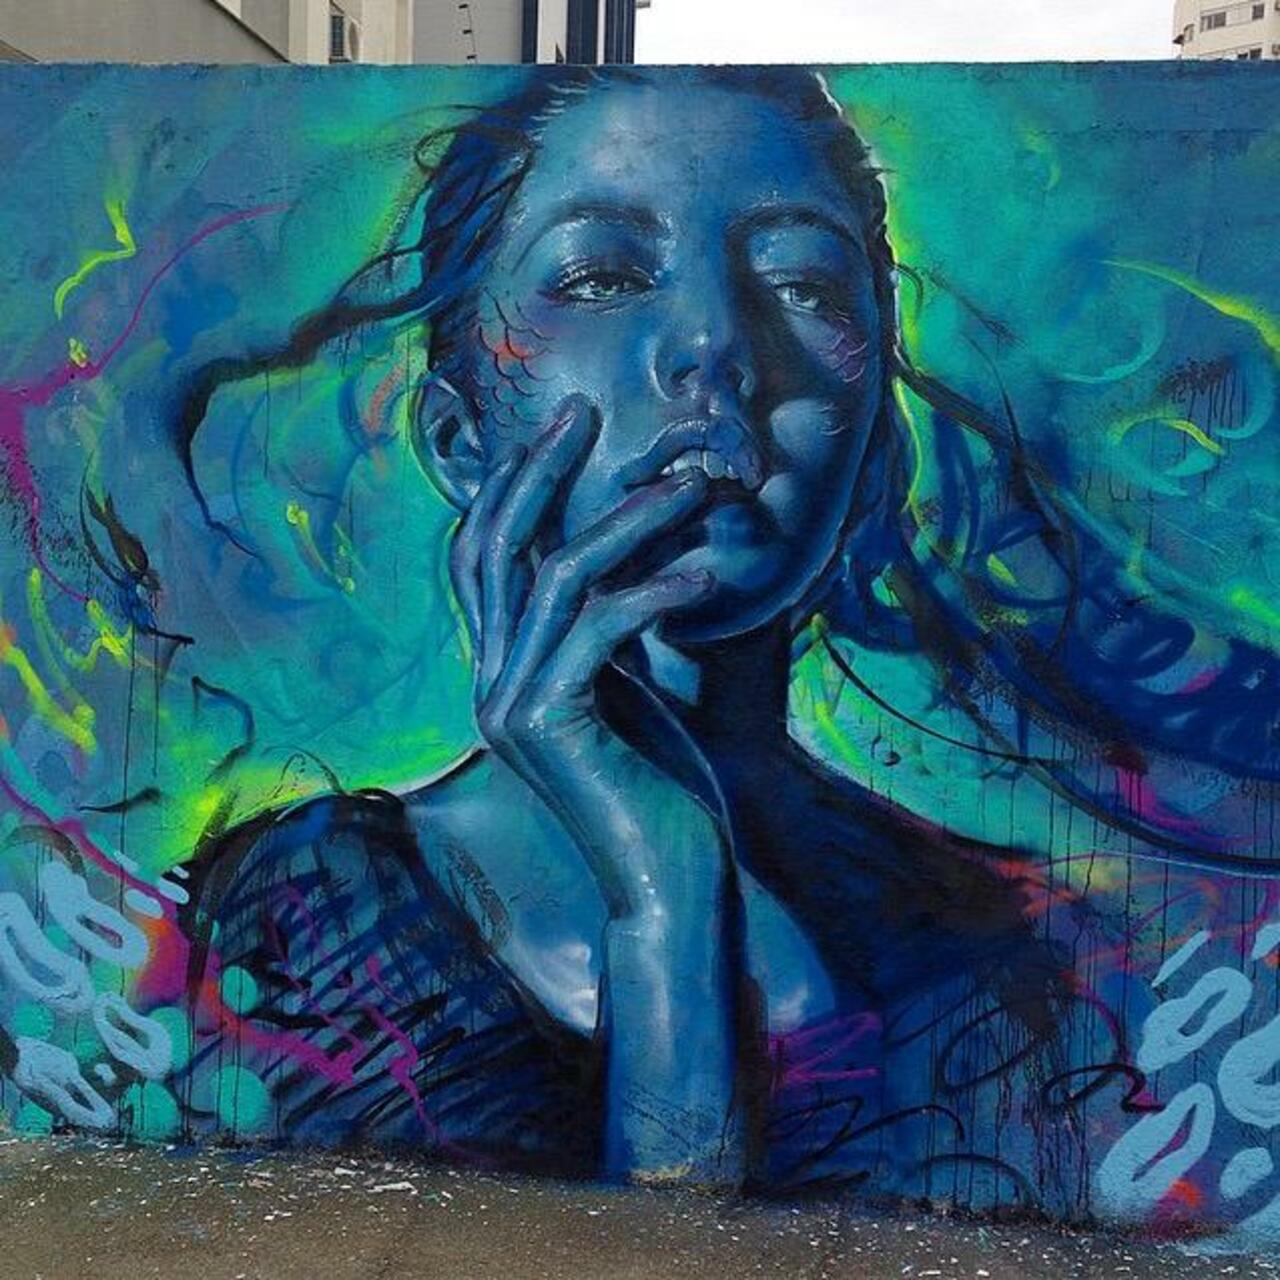 Thiago Valdi new Street Art piece titled 'Day Dreamer'

#art #mural #graffiti #streetart http://t.co/tQLjrm9WOV